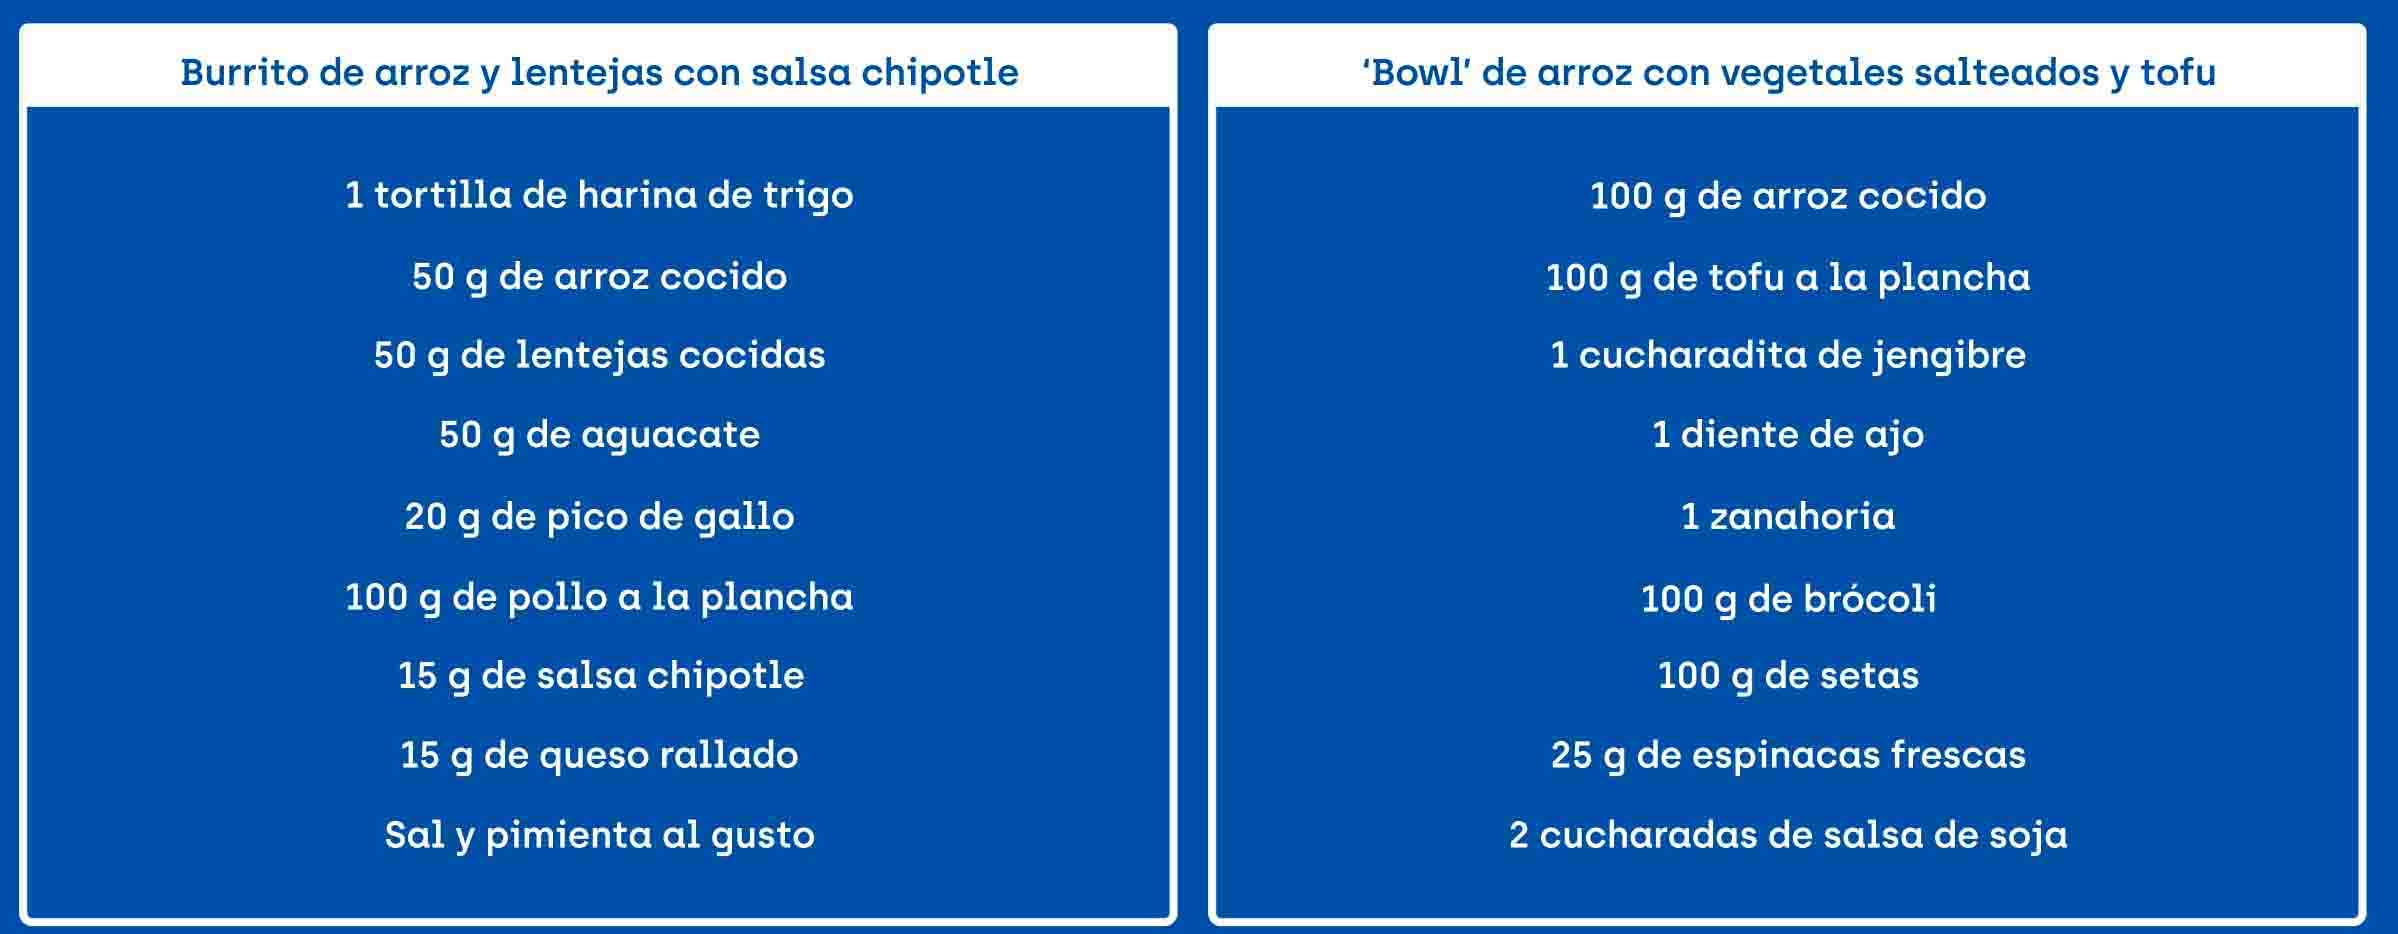 Ingredientes de la receta de burrito de arroz y lentejas con salsa chipotle y de la receta de 'bowl' de arroz con vegetales salteados y tofu.